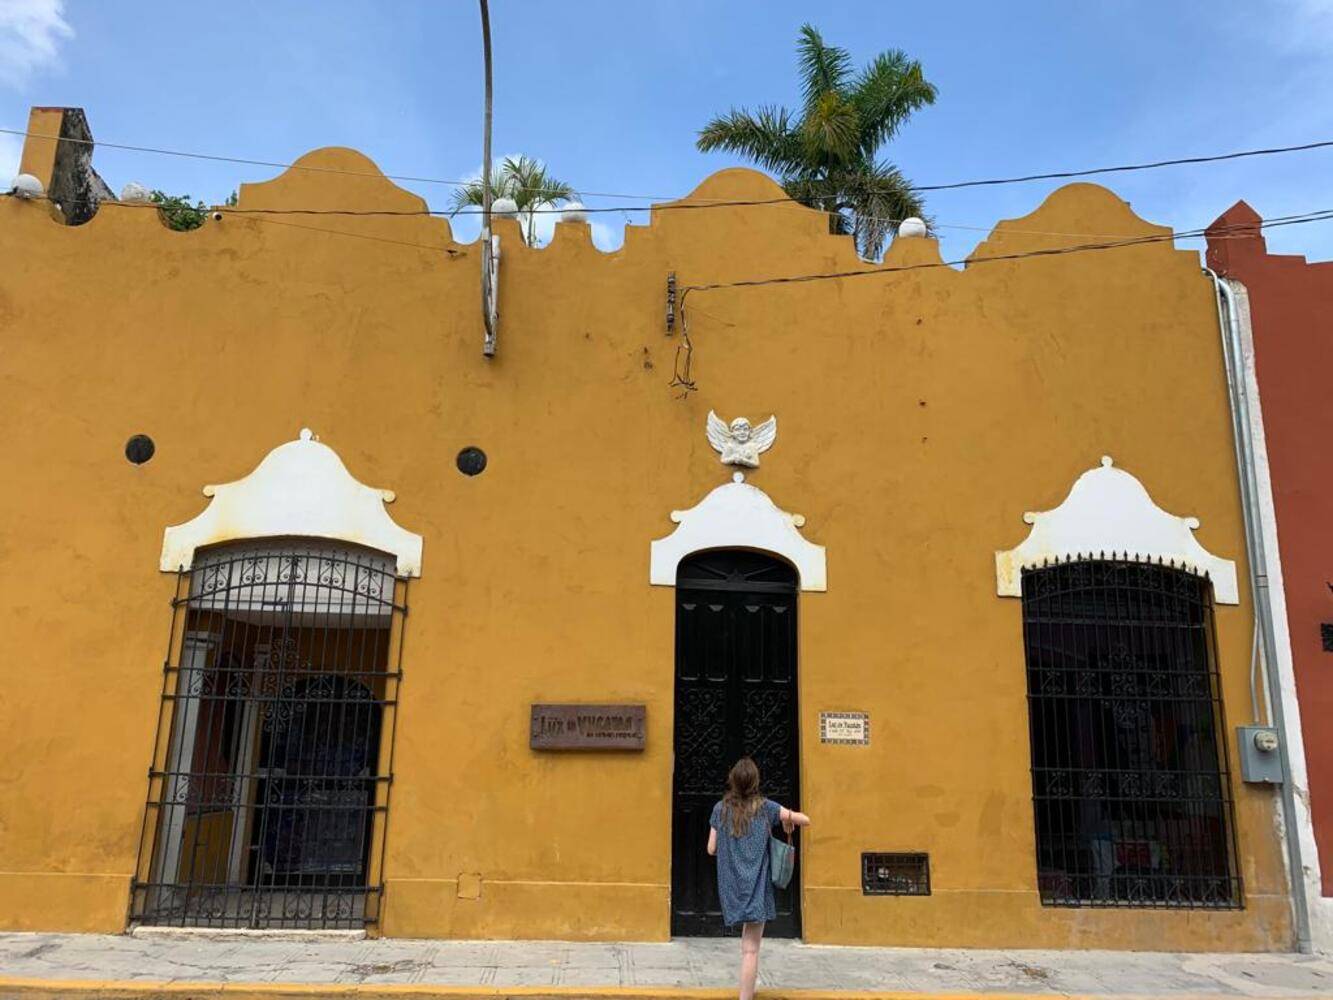 La capitale festive et culturelle du Yucatán : Mérida